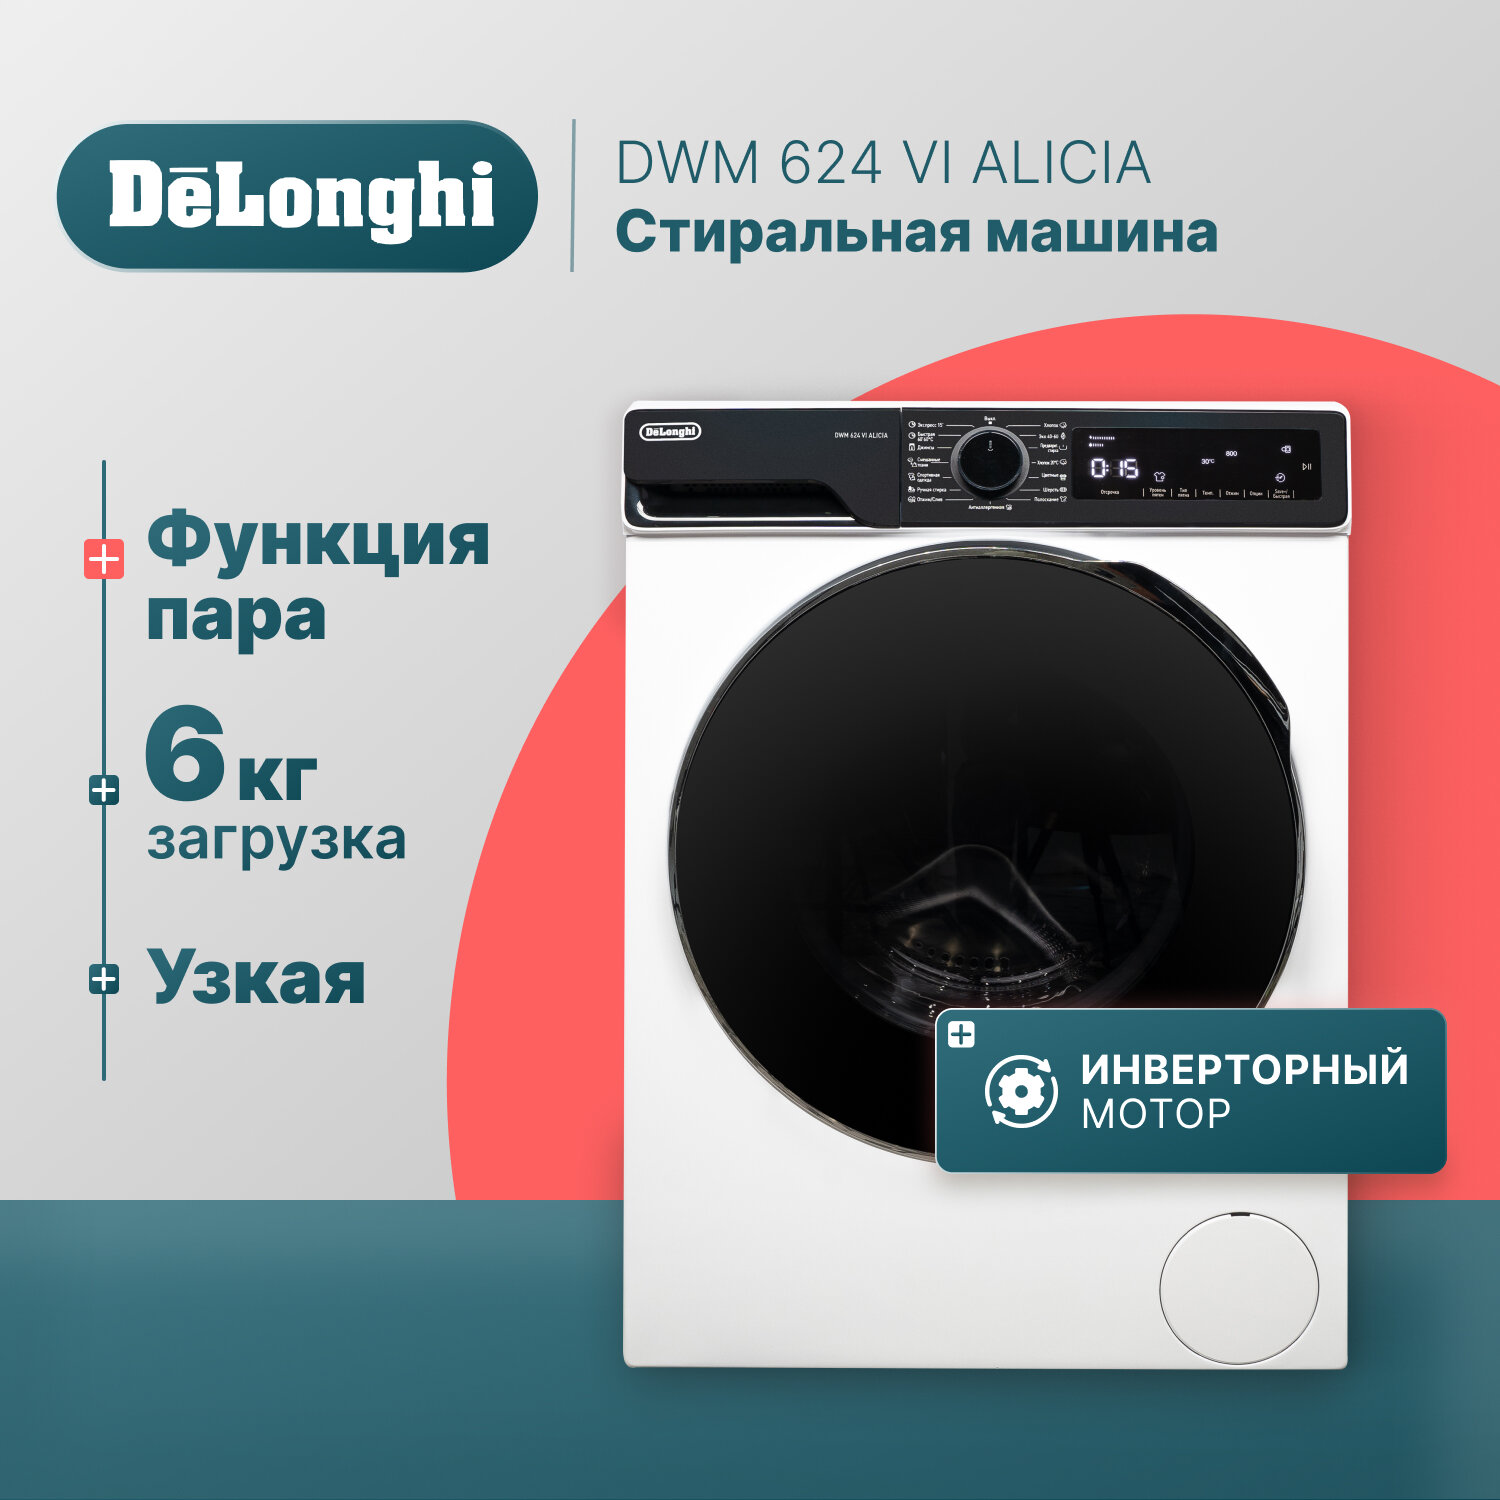 Стиральная машина DeLonghi DWM 624 VI ALICIA 42 см 6 кг отсрочка старта 15 программ половинная загрузка Eco-Logic